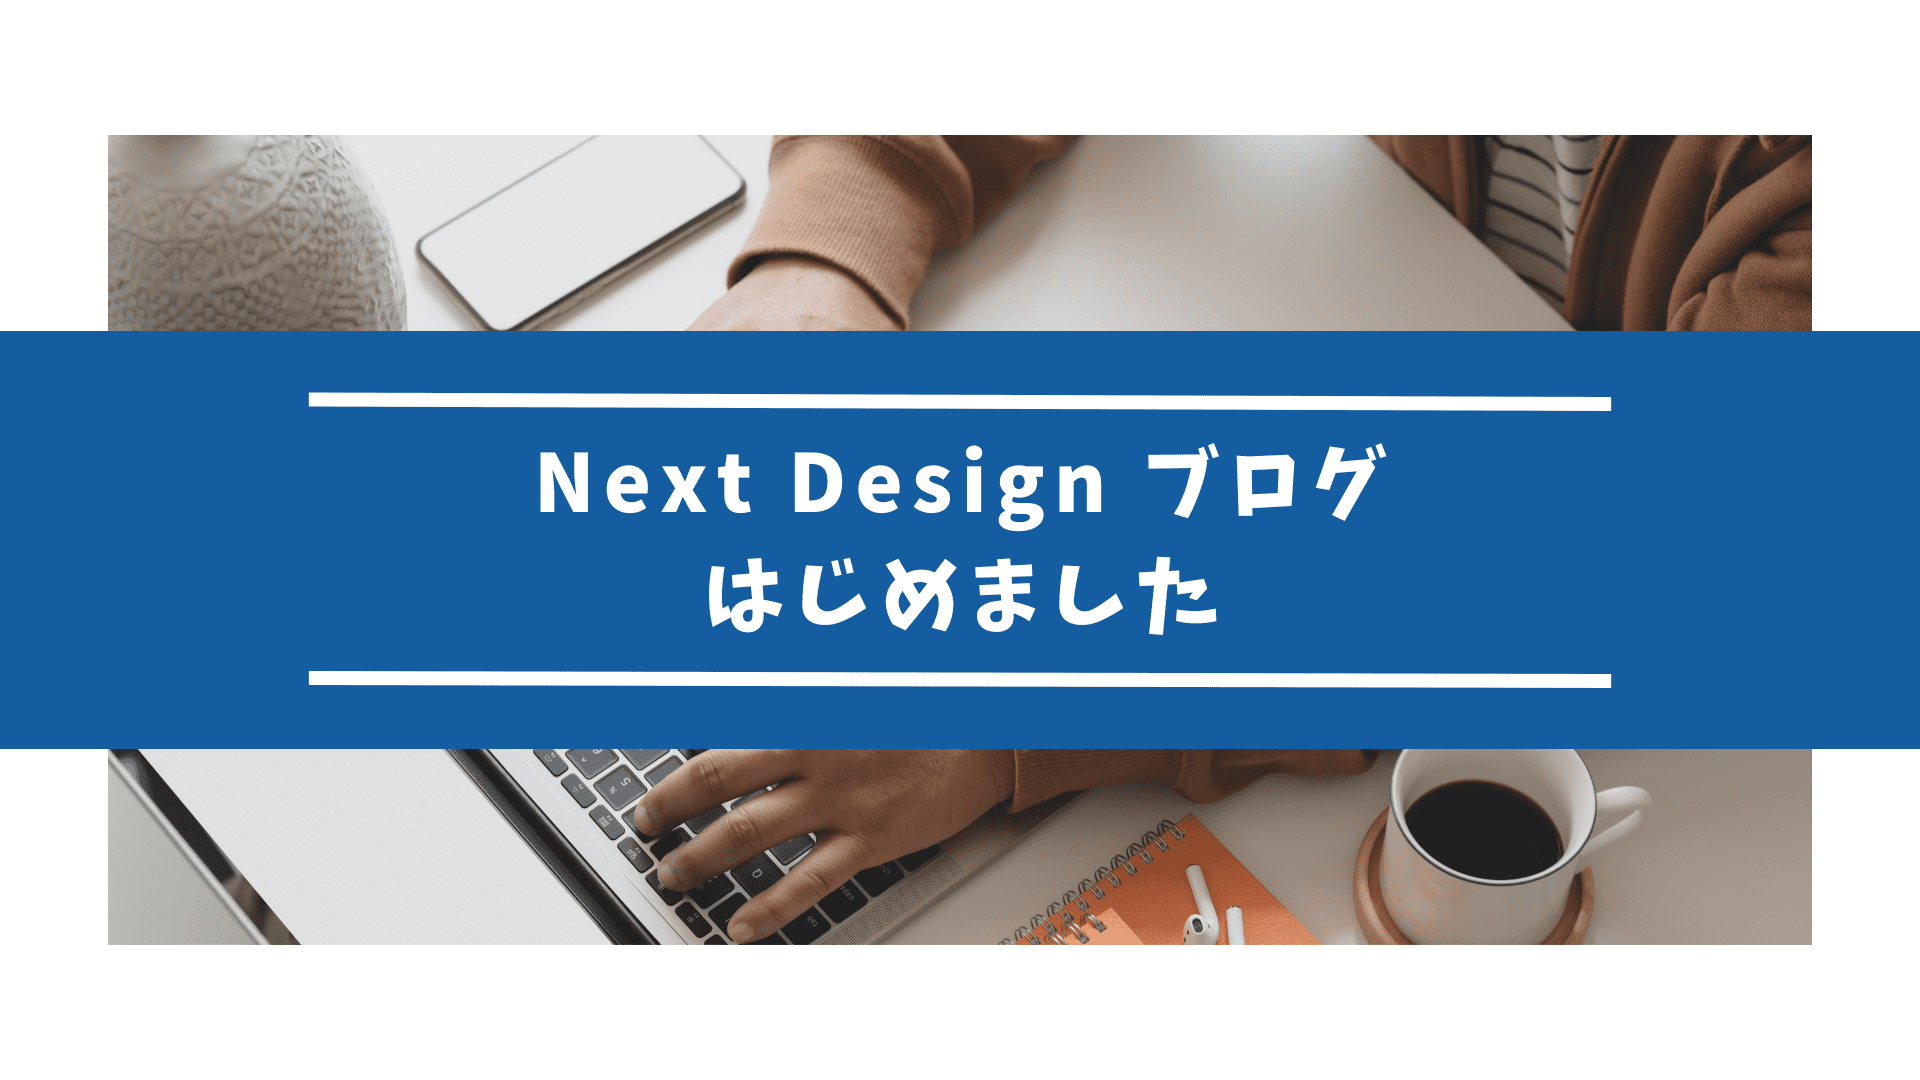 【おしらせ】 Next Design ブログ はじめました